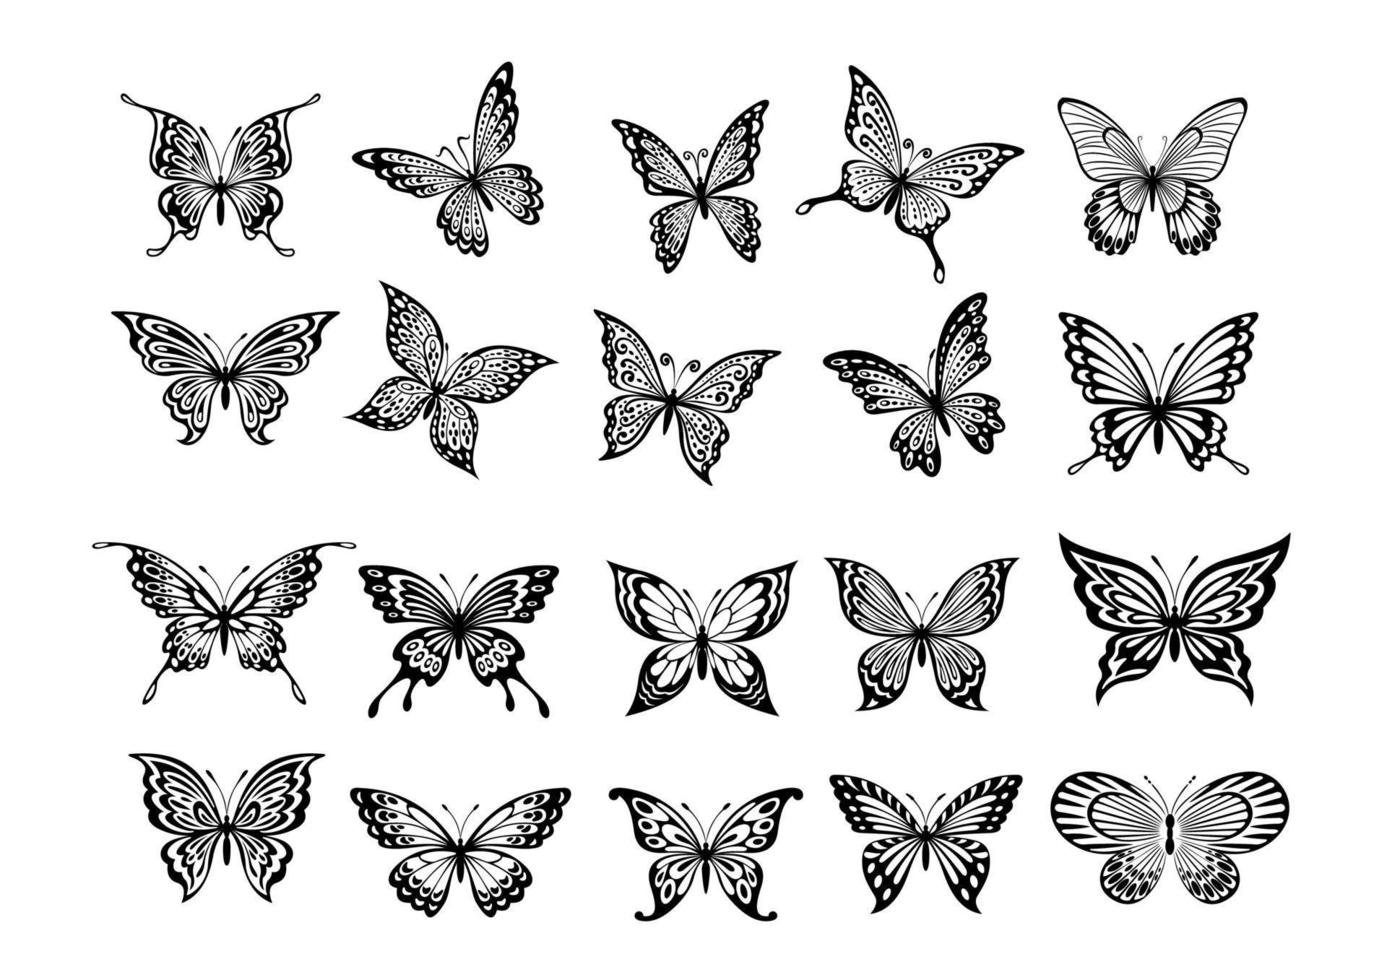 impostato di venti farfalle vettore